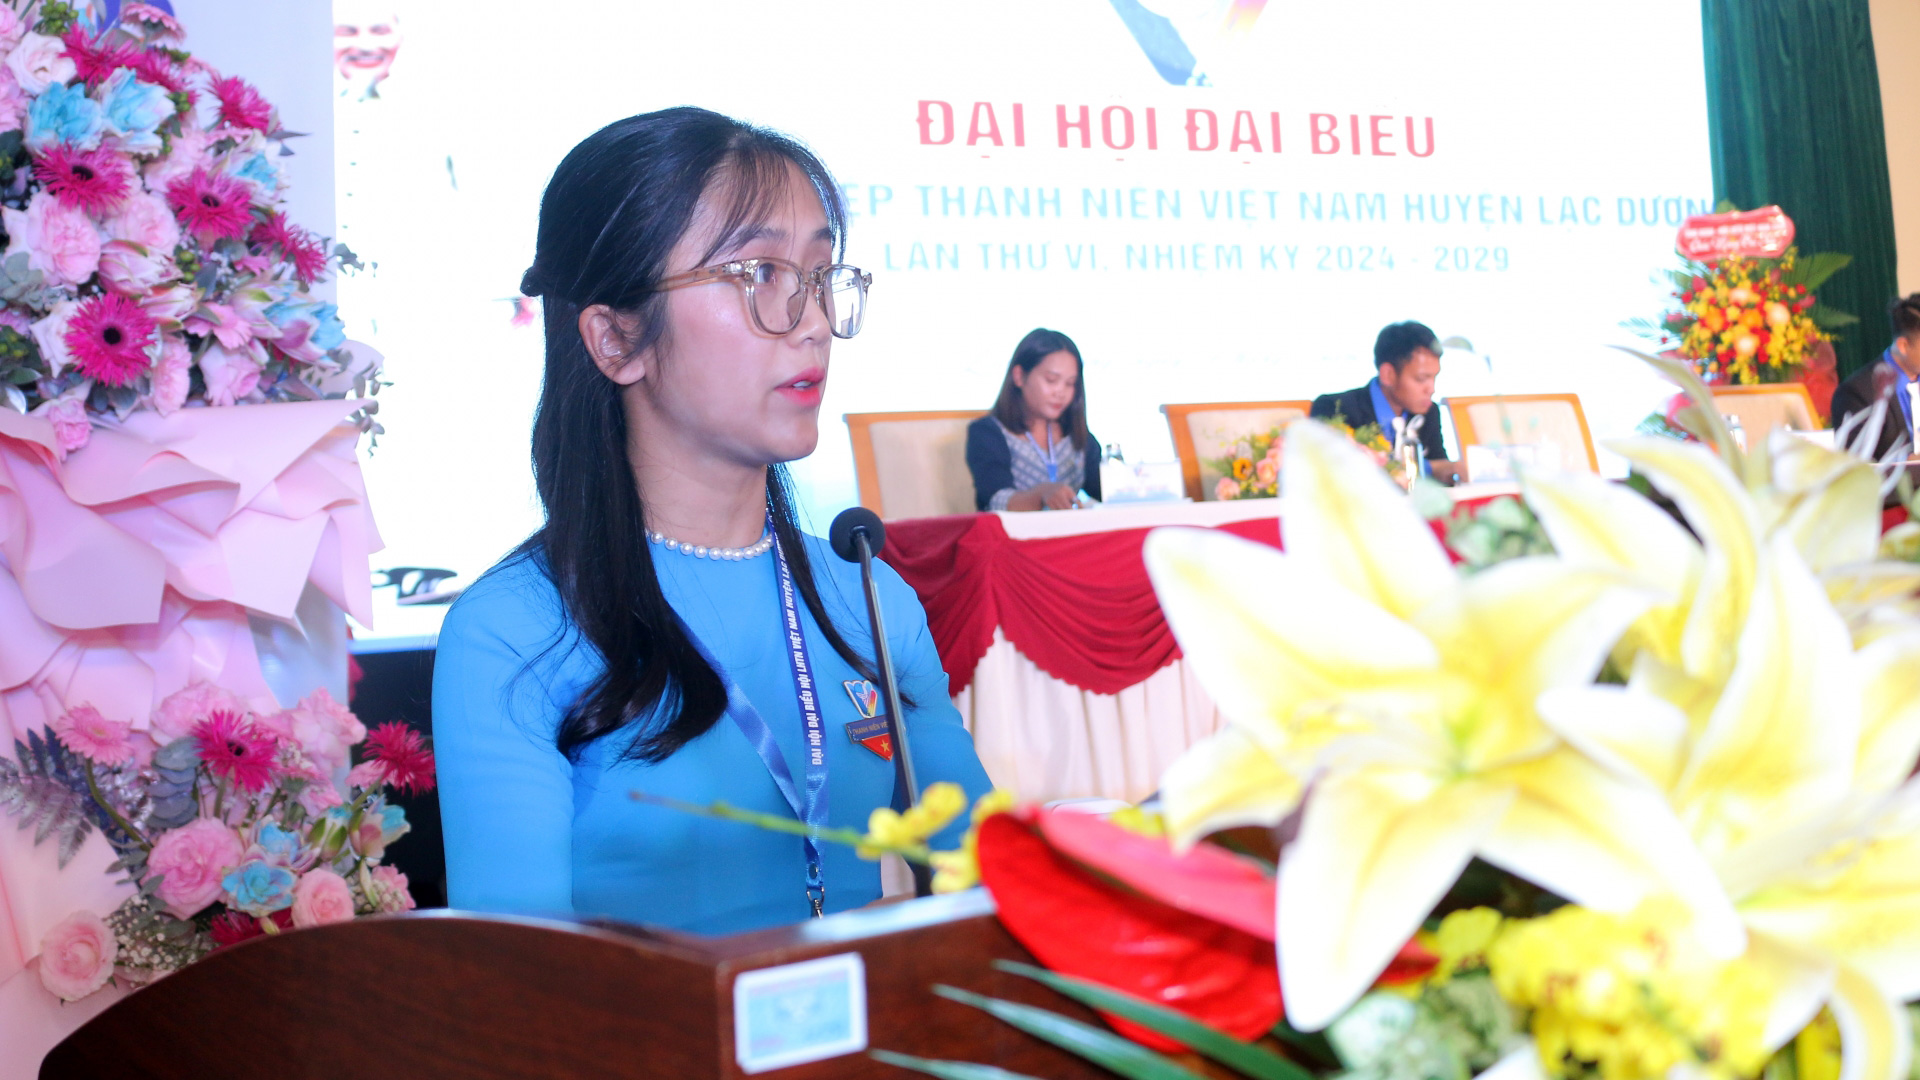 Chị Trần Phương Anh - Chủ tịch Ủy ban Hội LHTN Việt Nam huyện Lạc Dương khóa V phát biểu khai mạc Đại hội